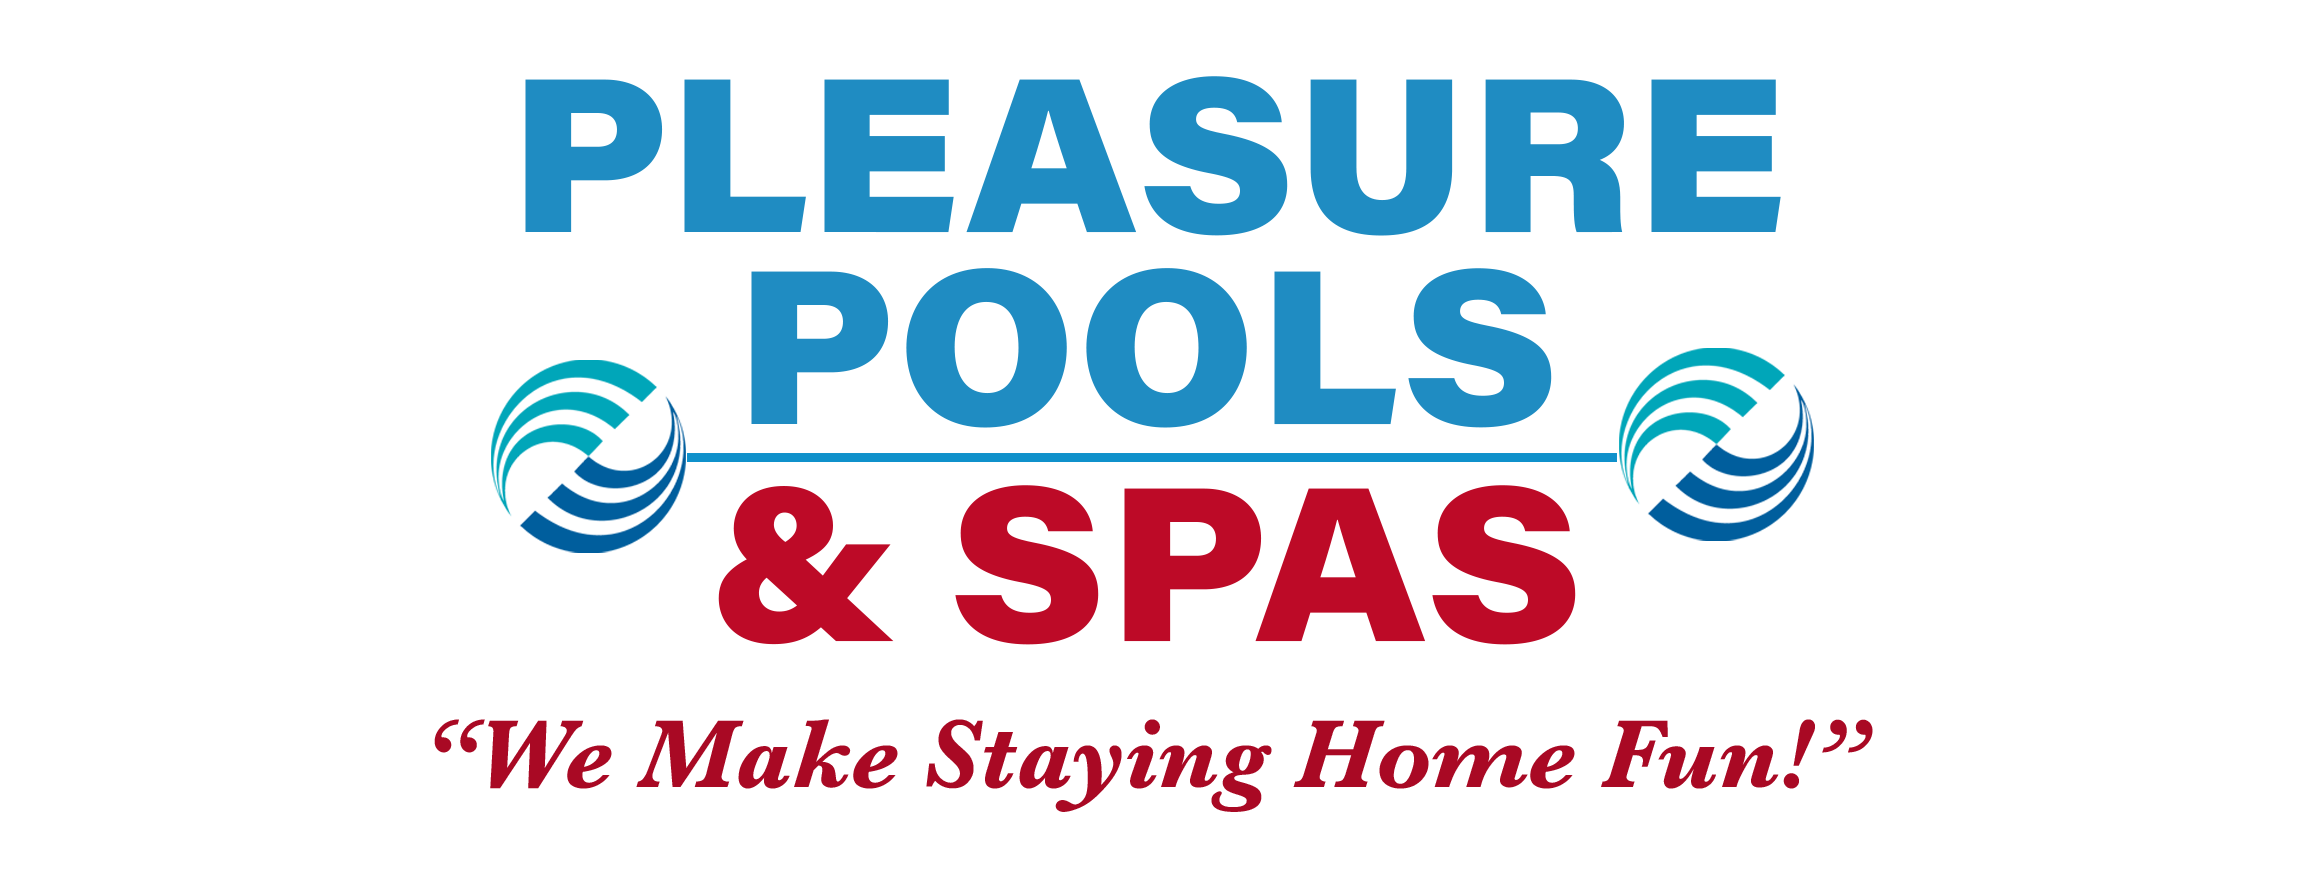 Pleasure pools Logo